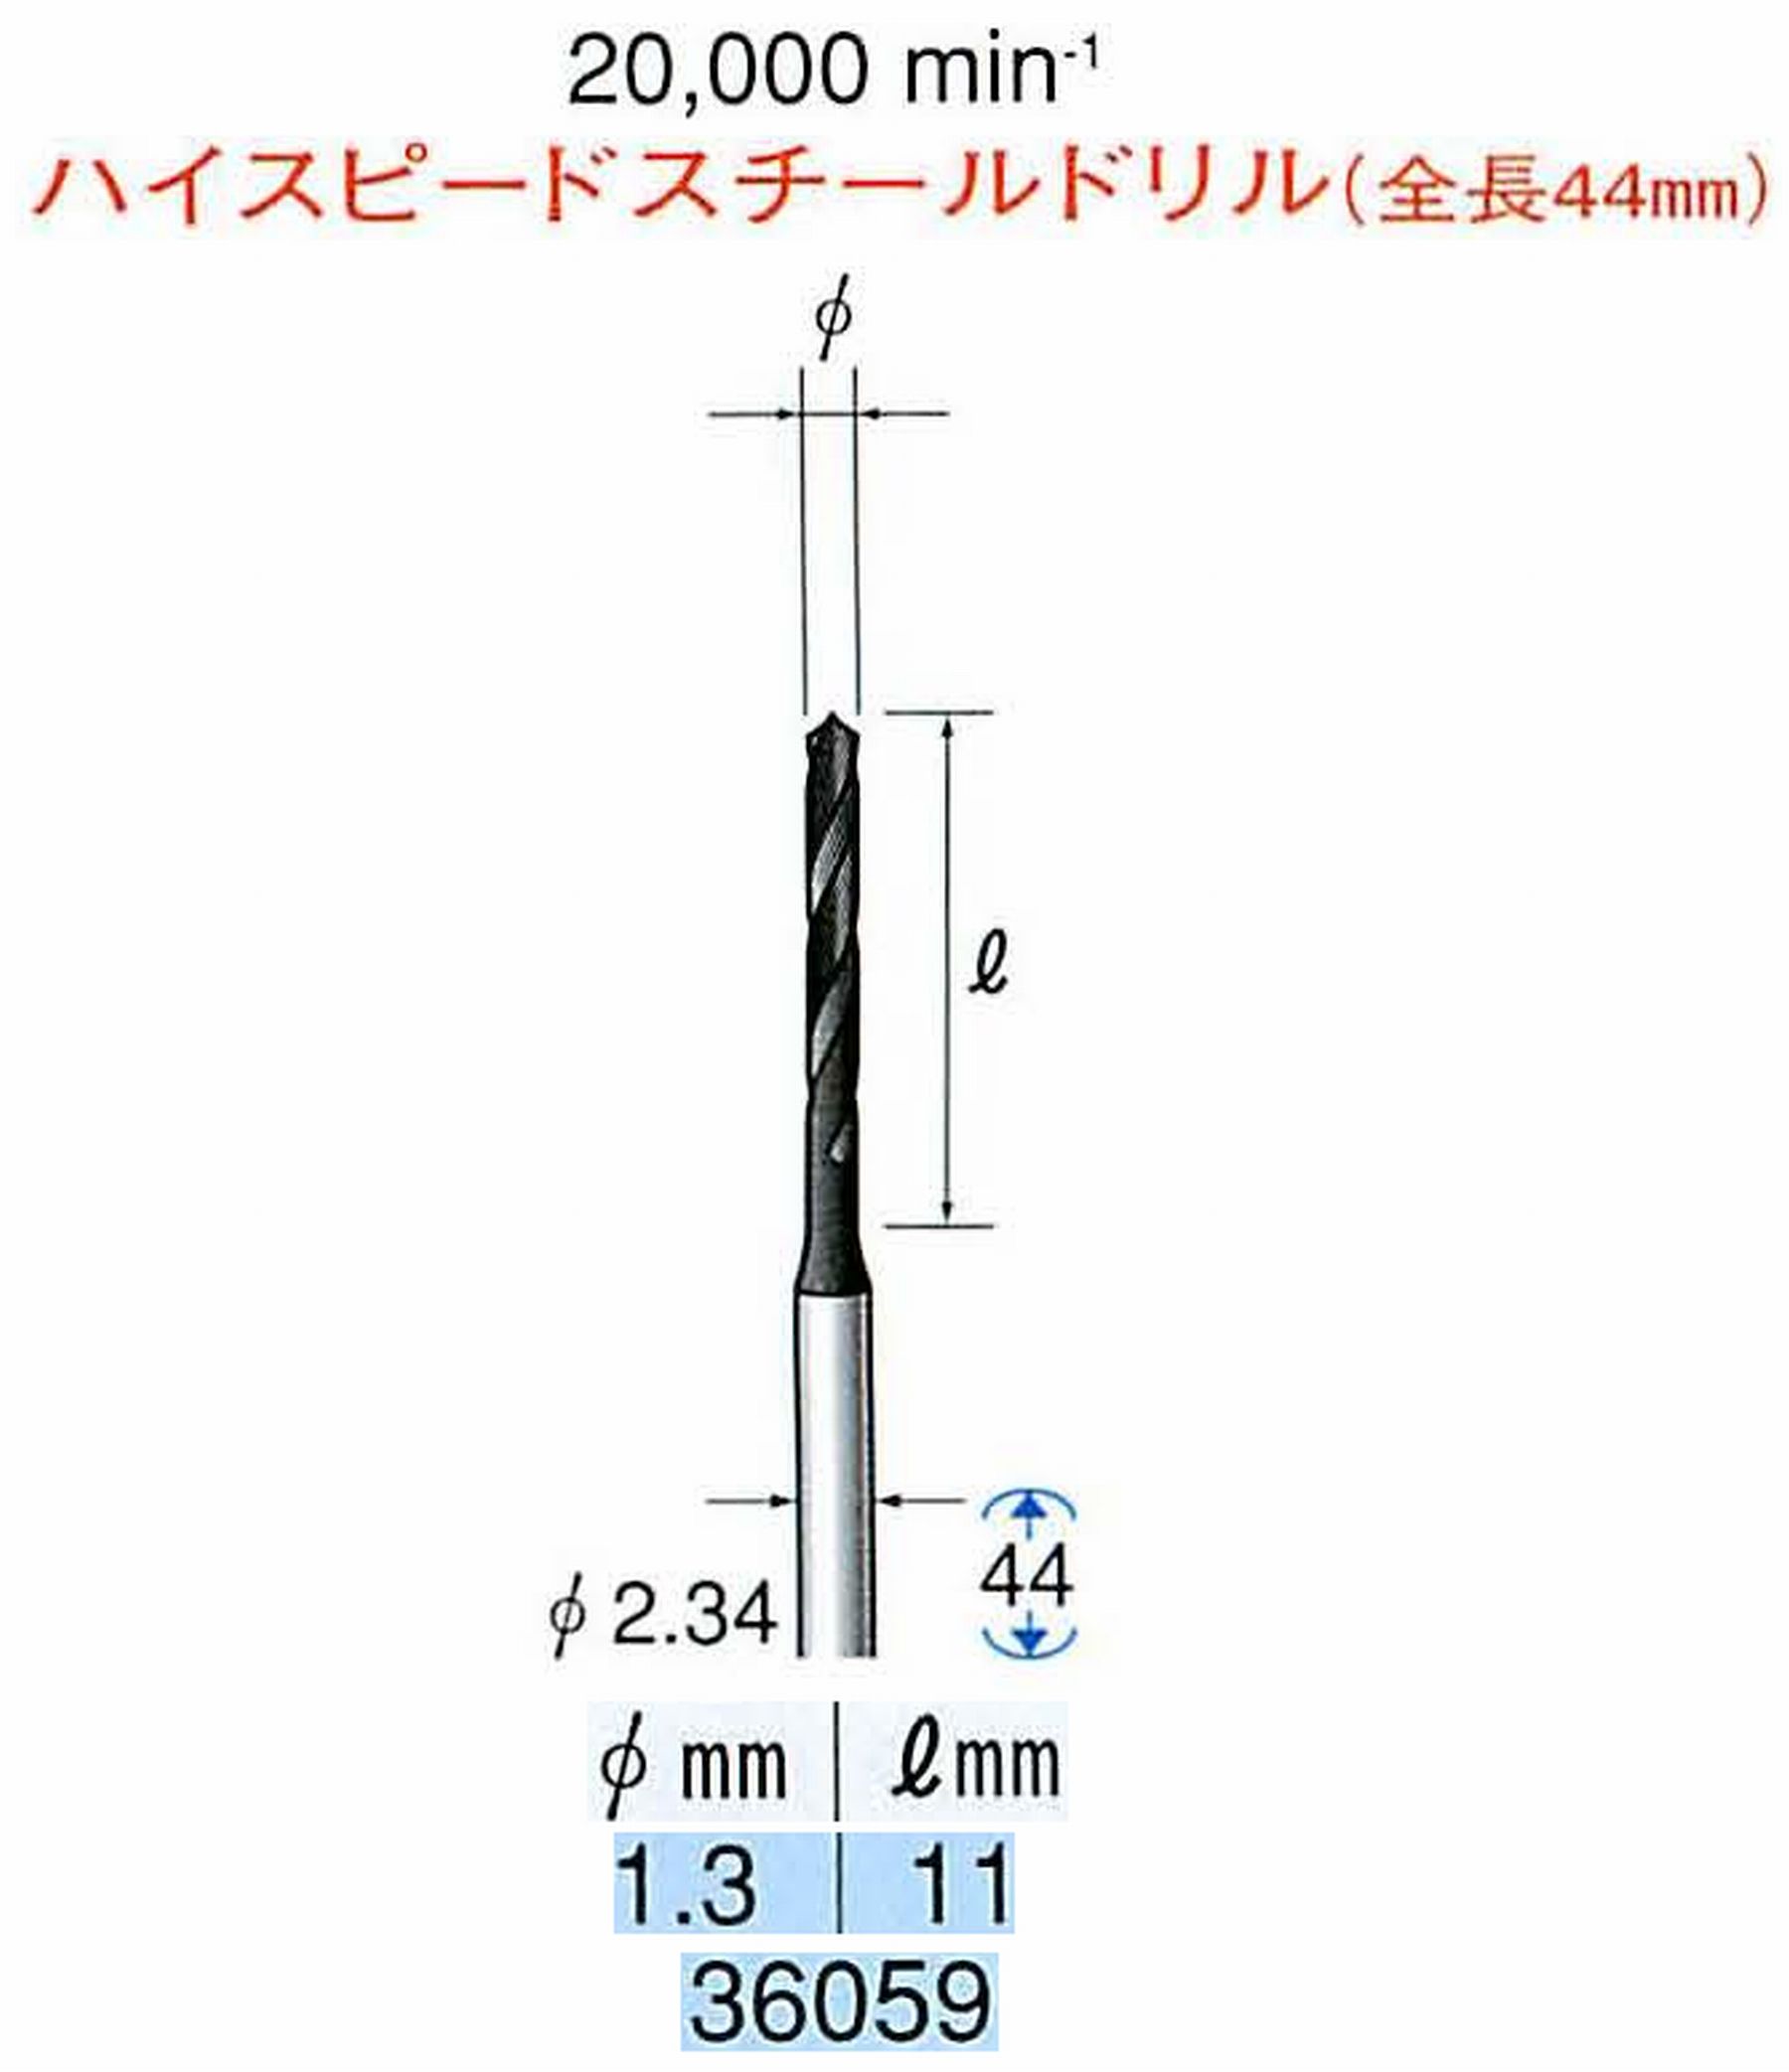 ナカニシ/NAKANISHI ツイストドリル ハイスピードスチール(H.S.S)ドリル(全長44mm) 軸径(シャンク) φ2.34mm 36059